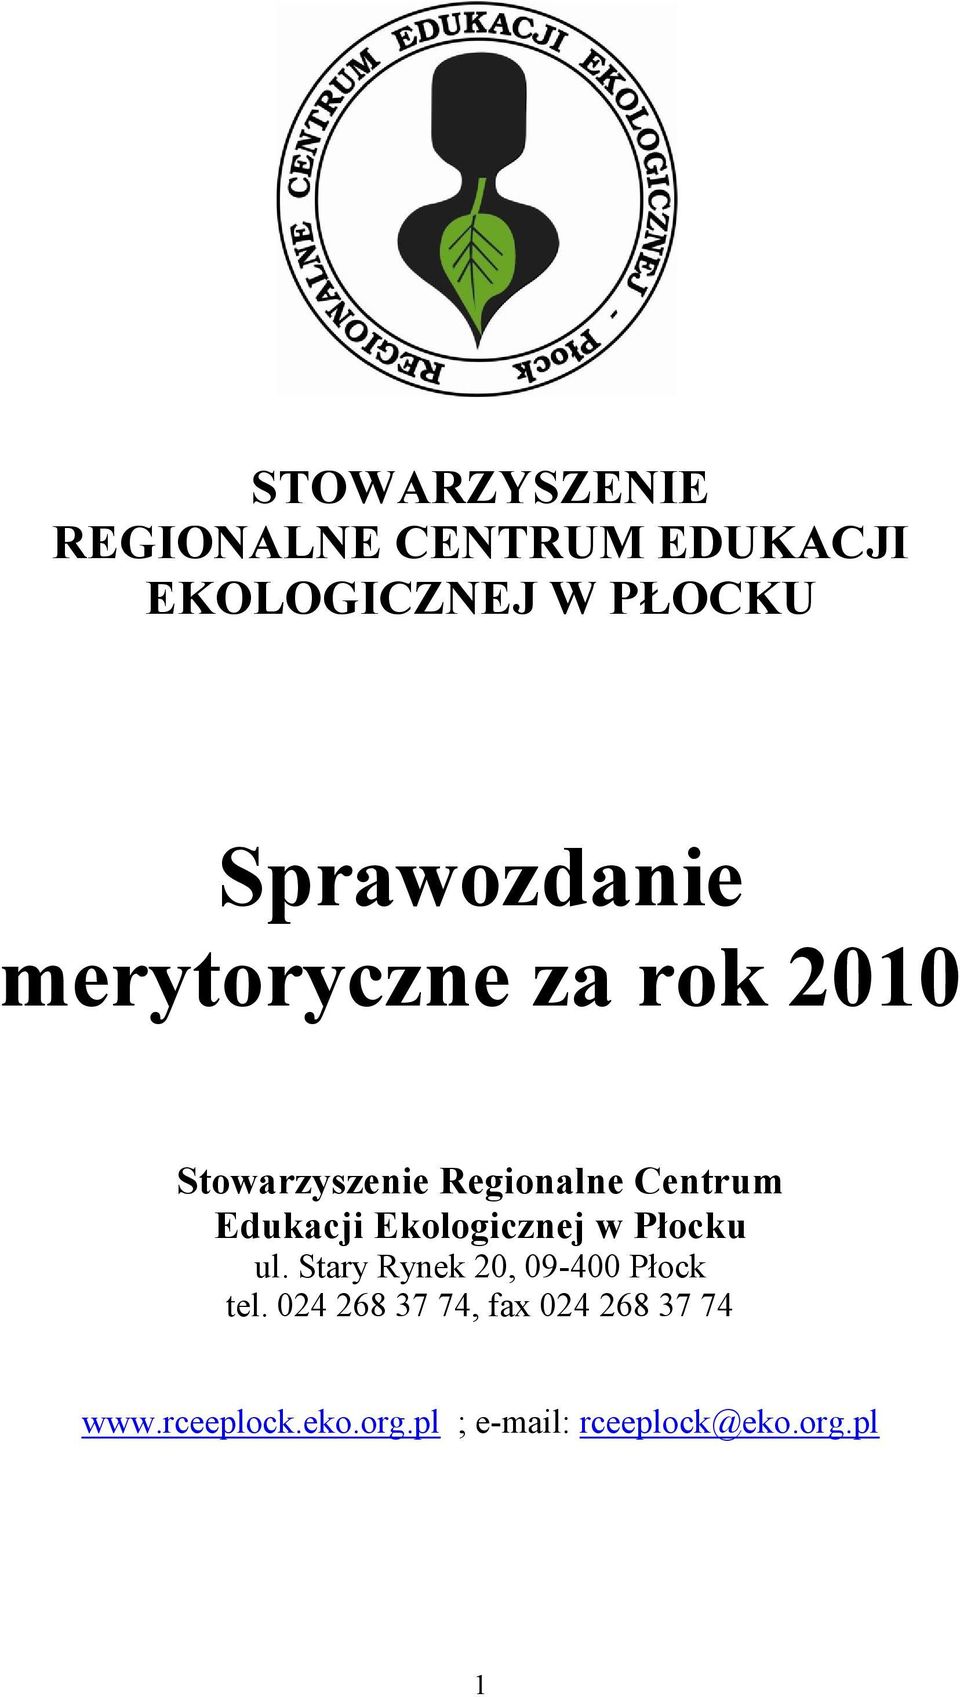 Edukacji Ekologicznej w Płocku ul. Stary Rynek 20, 09-400 Płock tel.